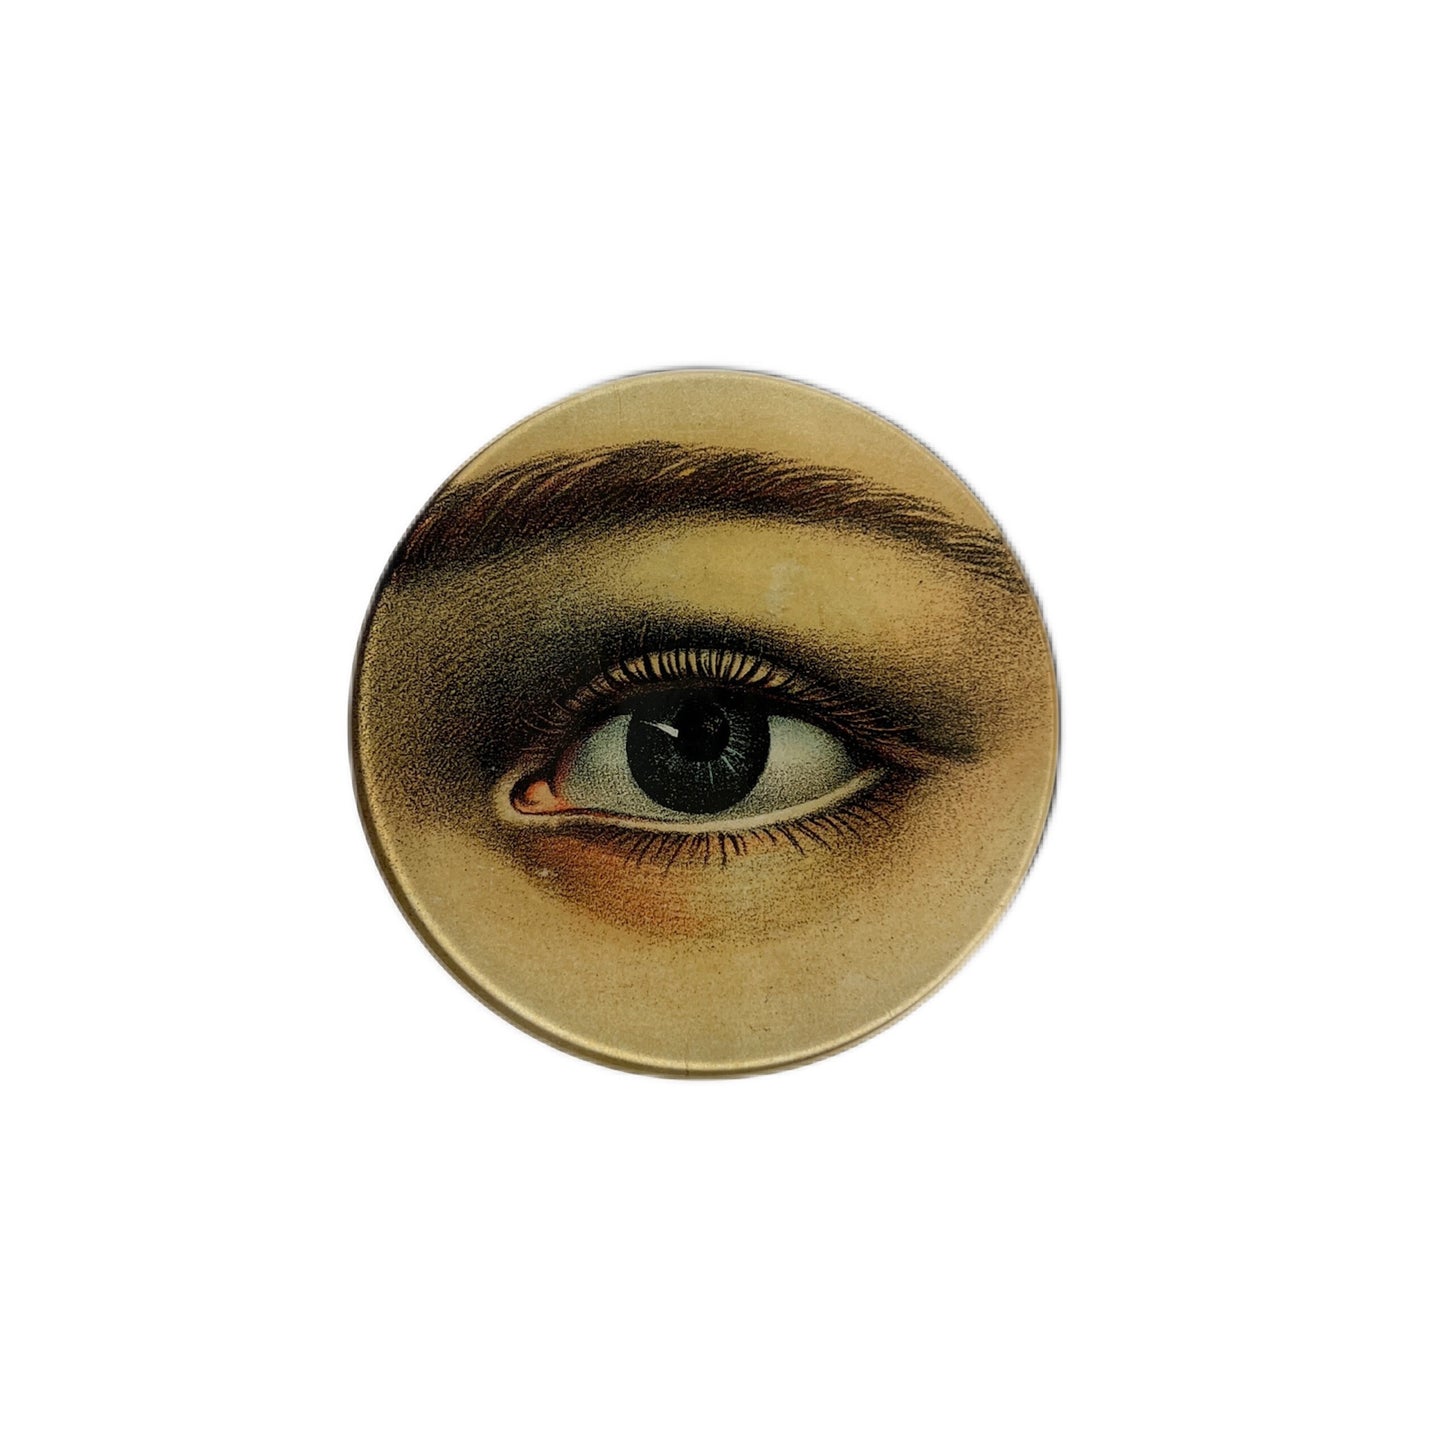 【JOHN DERIAN】デコパージュプレート Eye (Left)